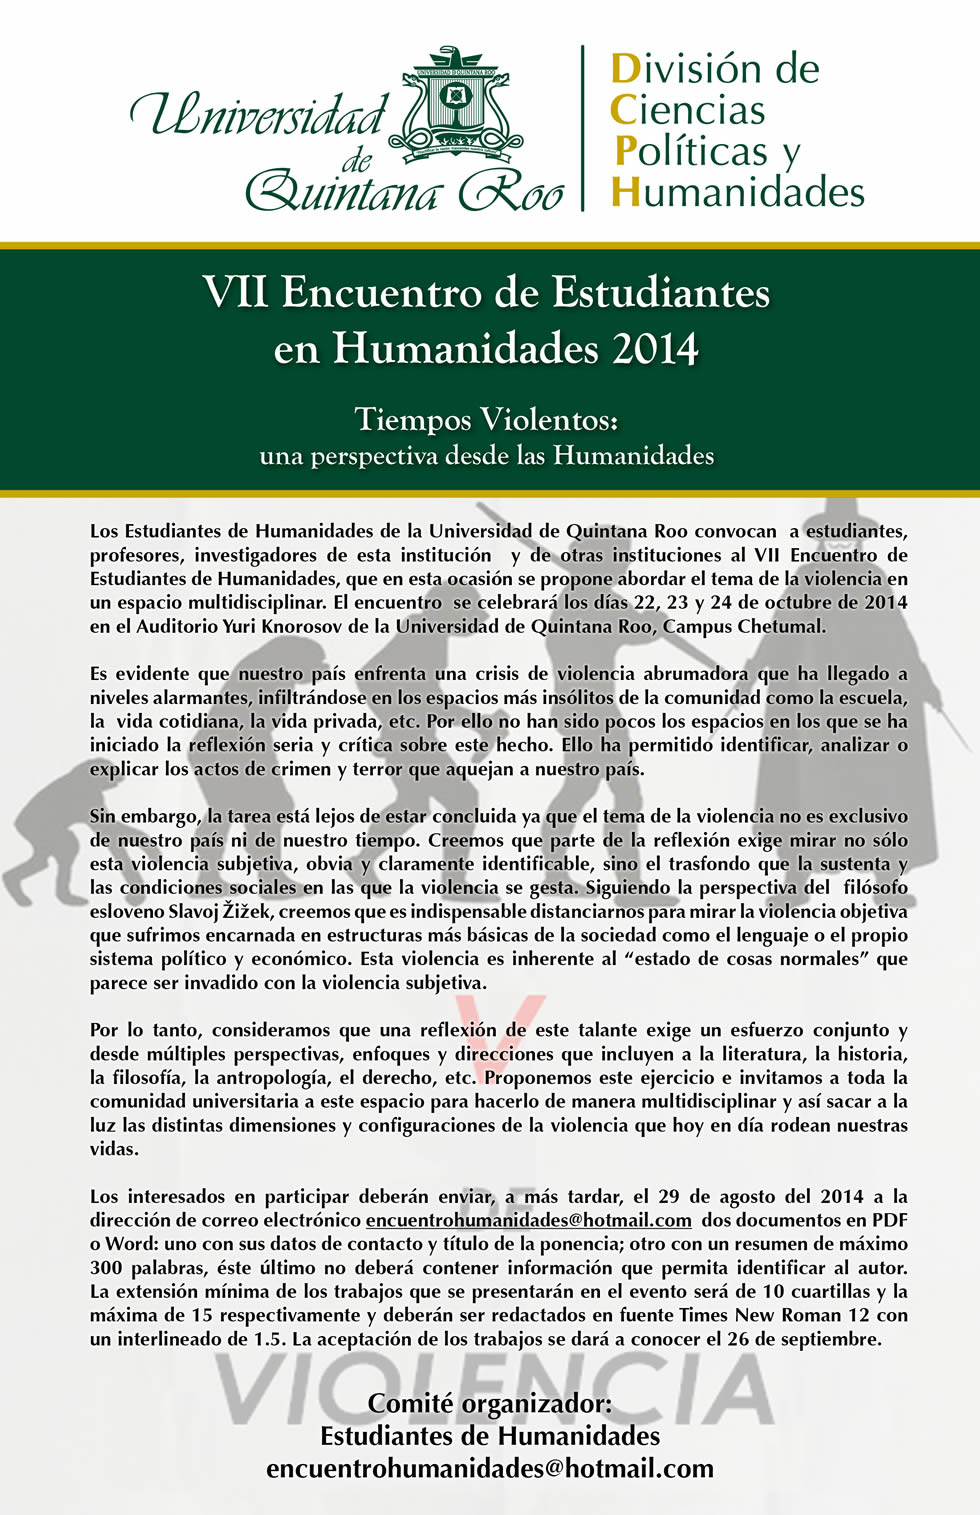 VII_Encuentro_de_Estudiantes_en_Humanidades-tiempos_violentos2014.jpg